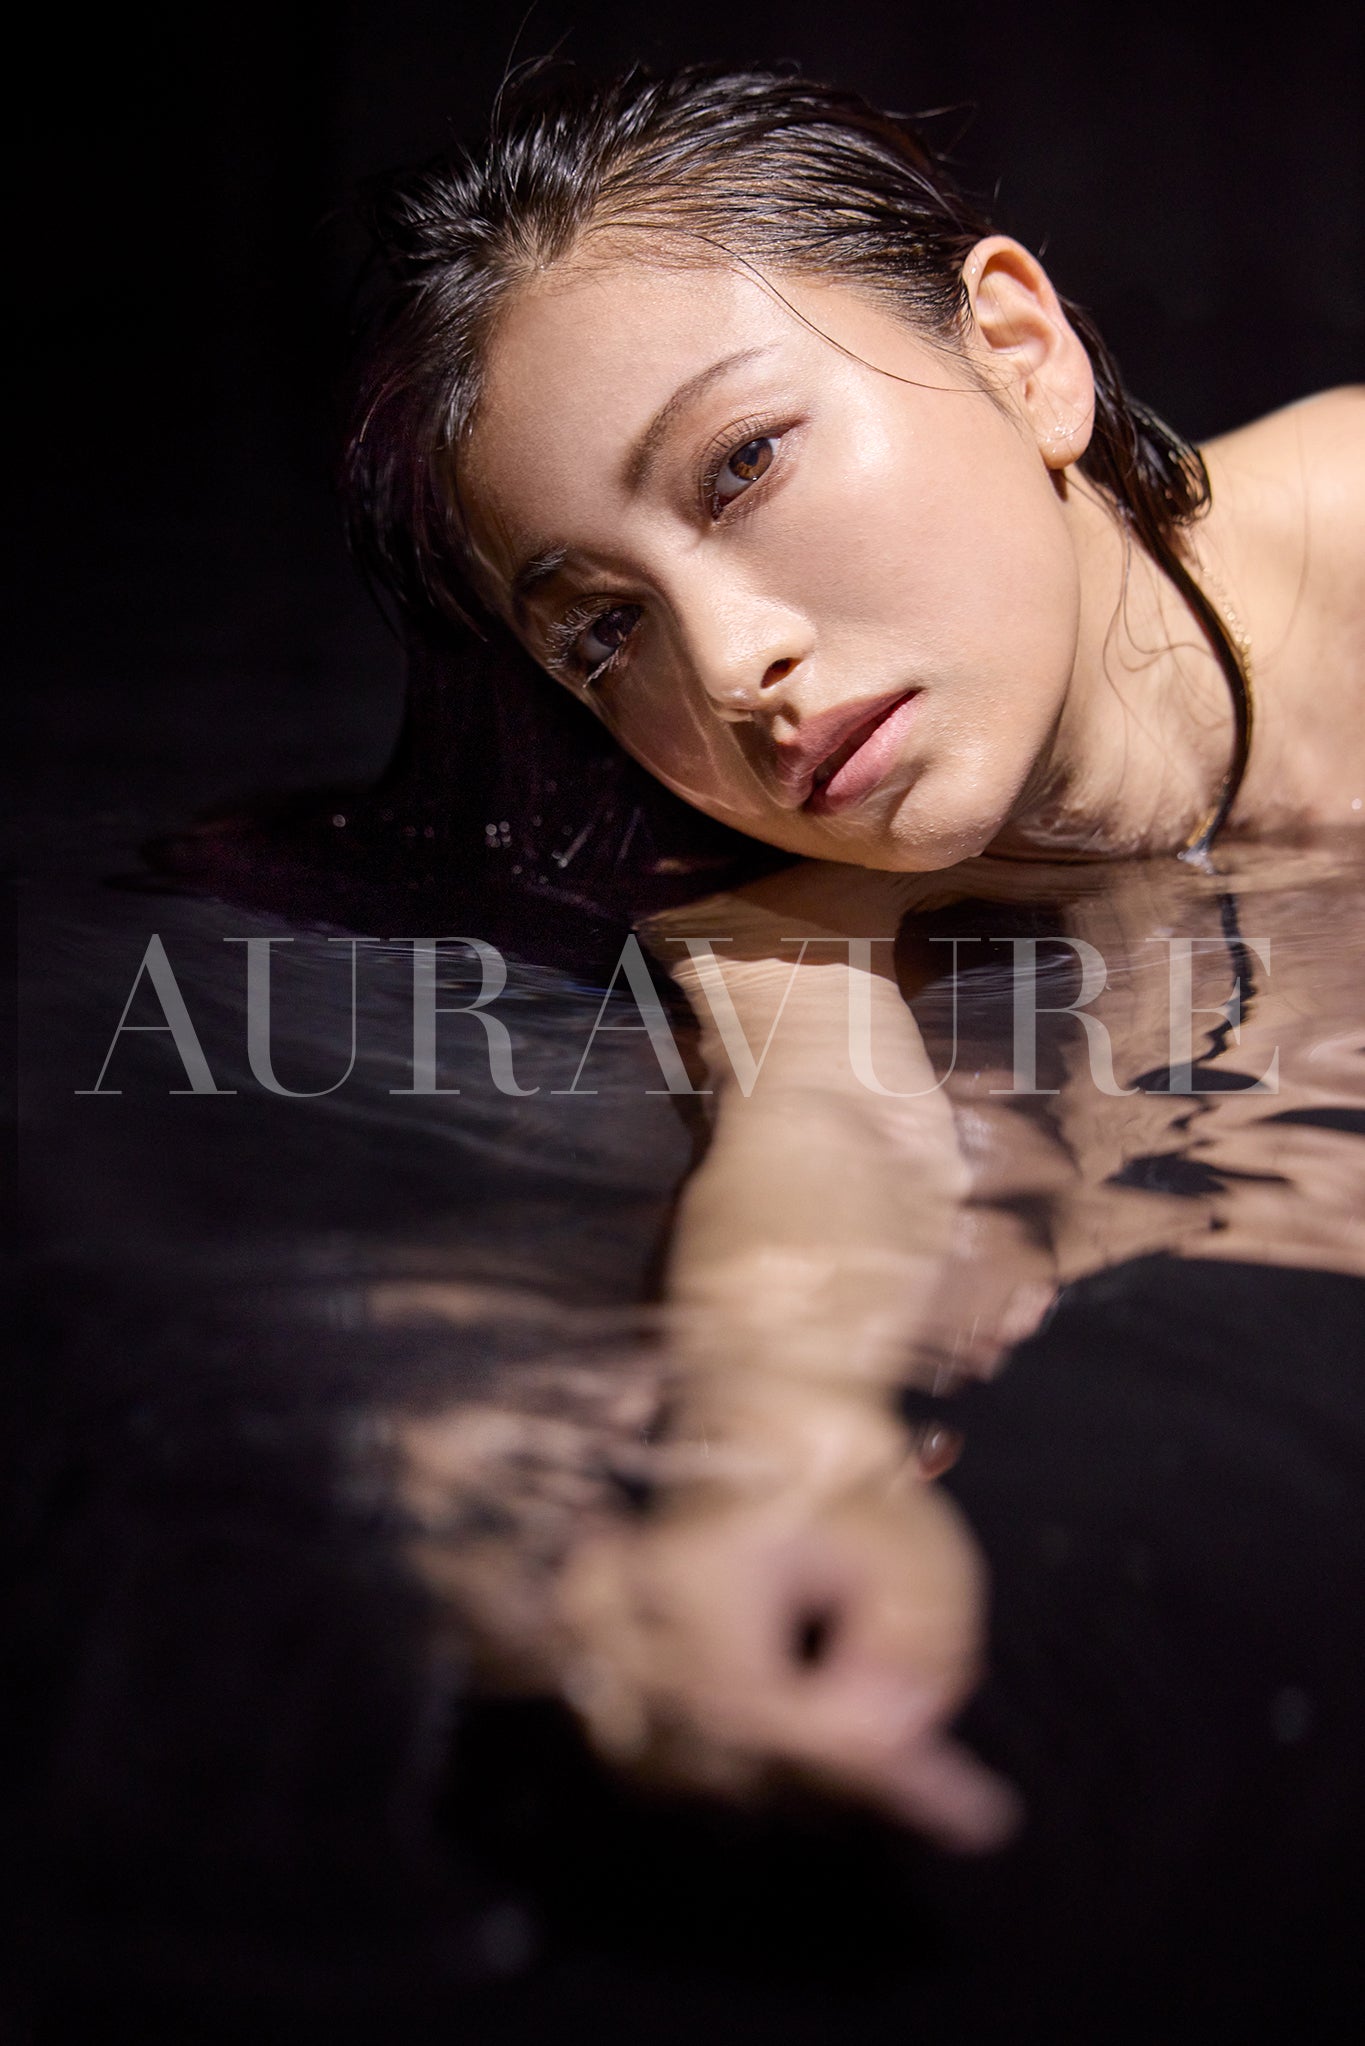 Auravure Magazine #2 Takara Suzuki  PhotoBook + Special Video!